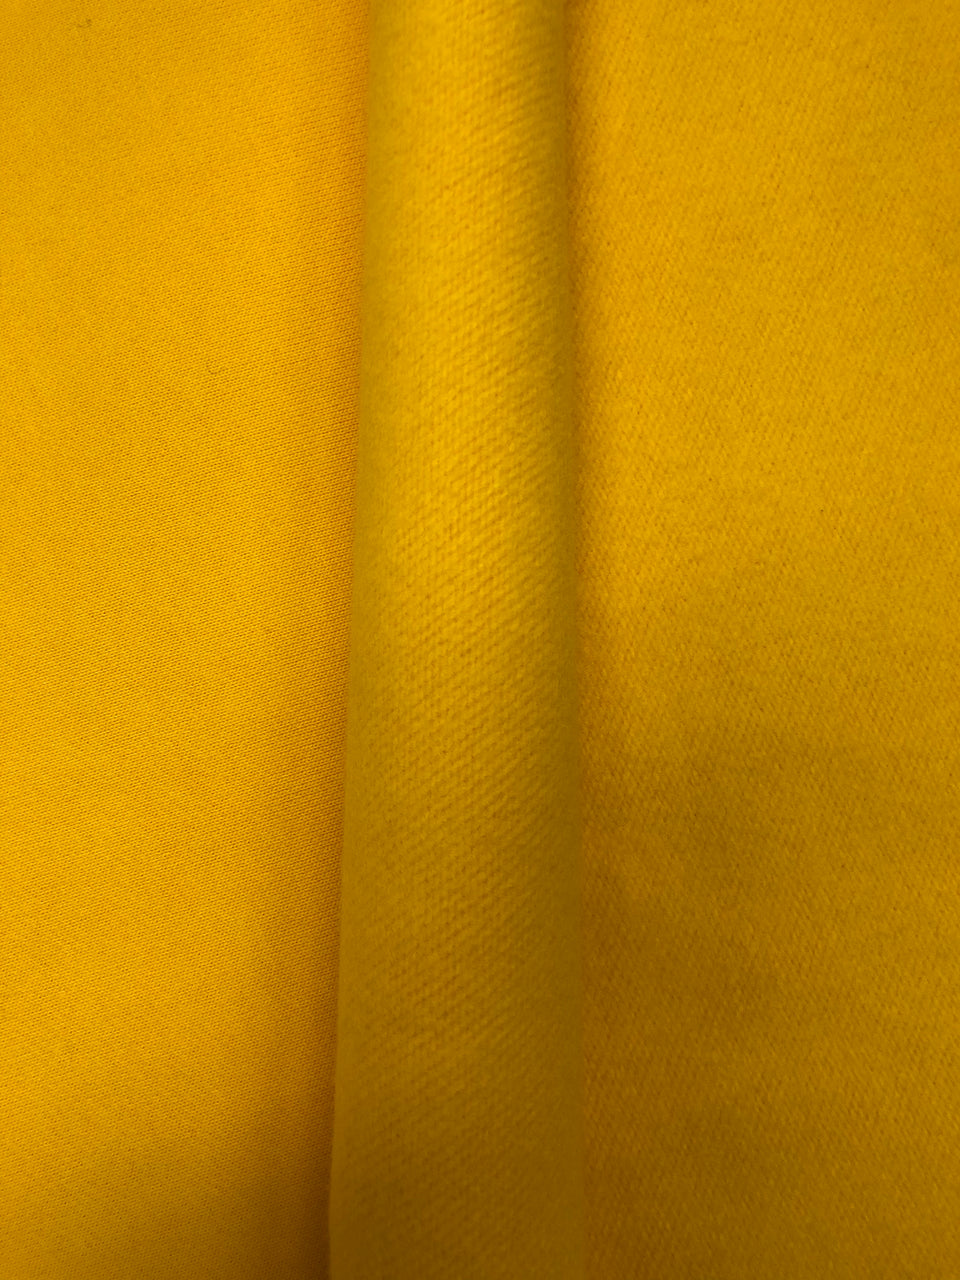 Sunshine Yellow - French Fleece